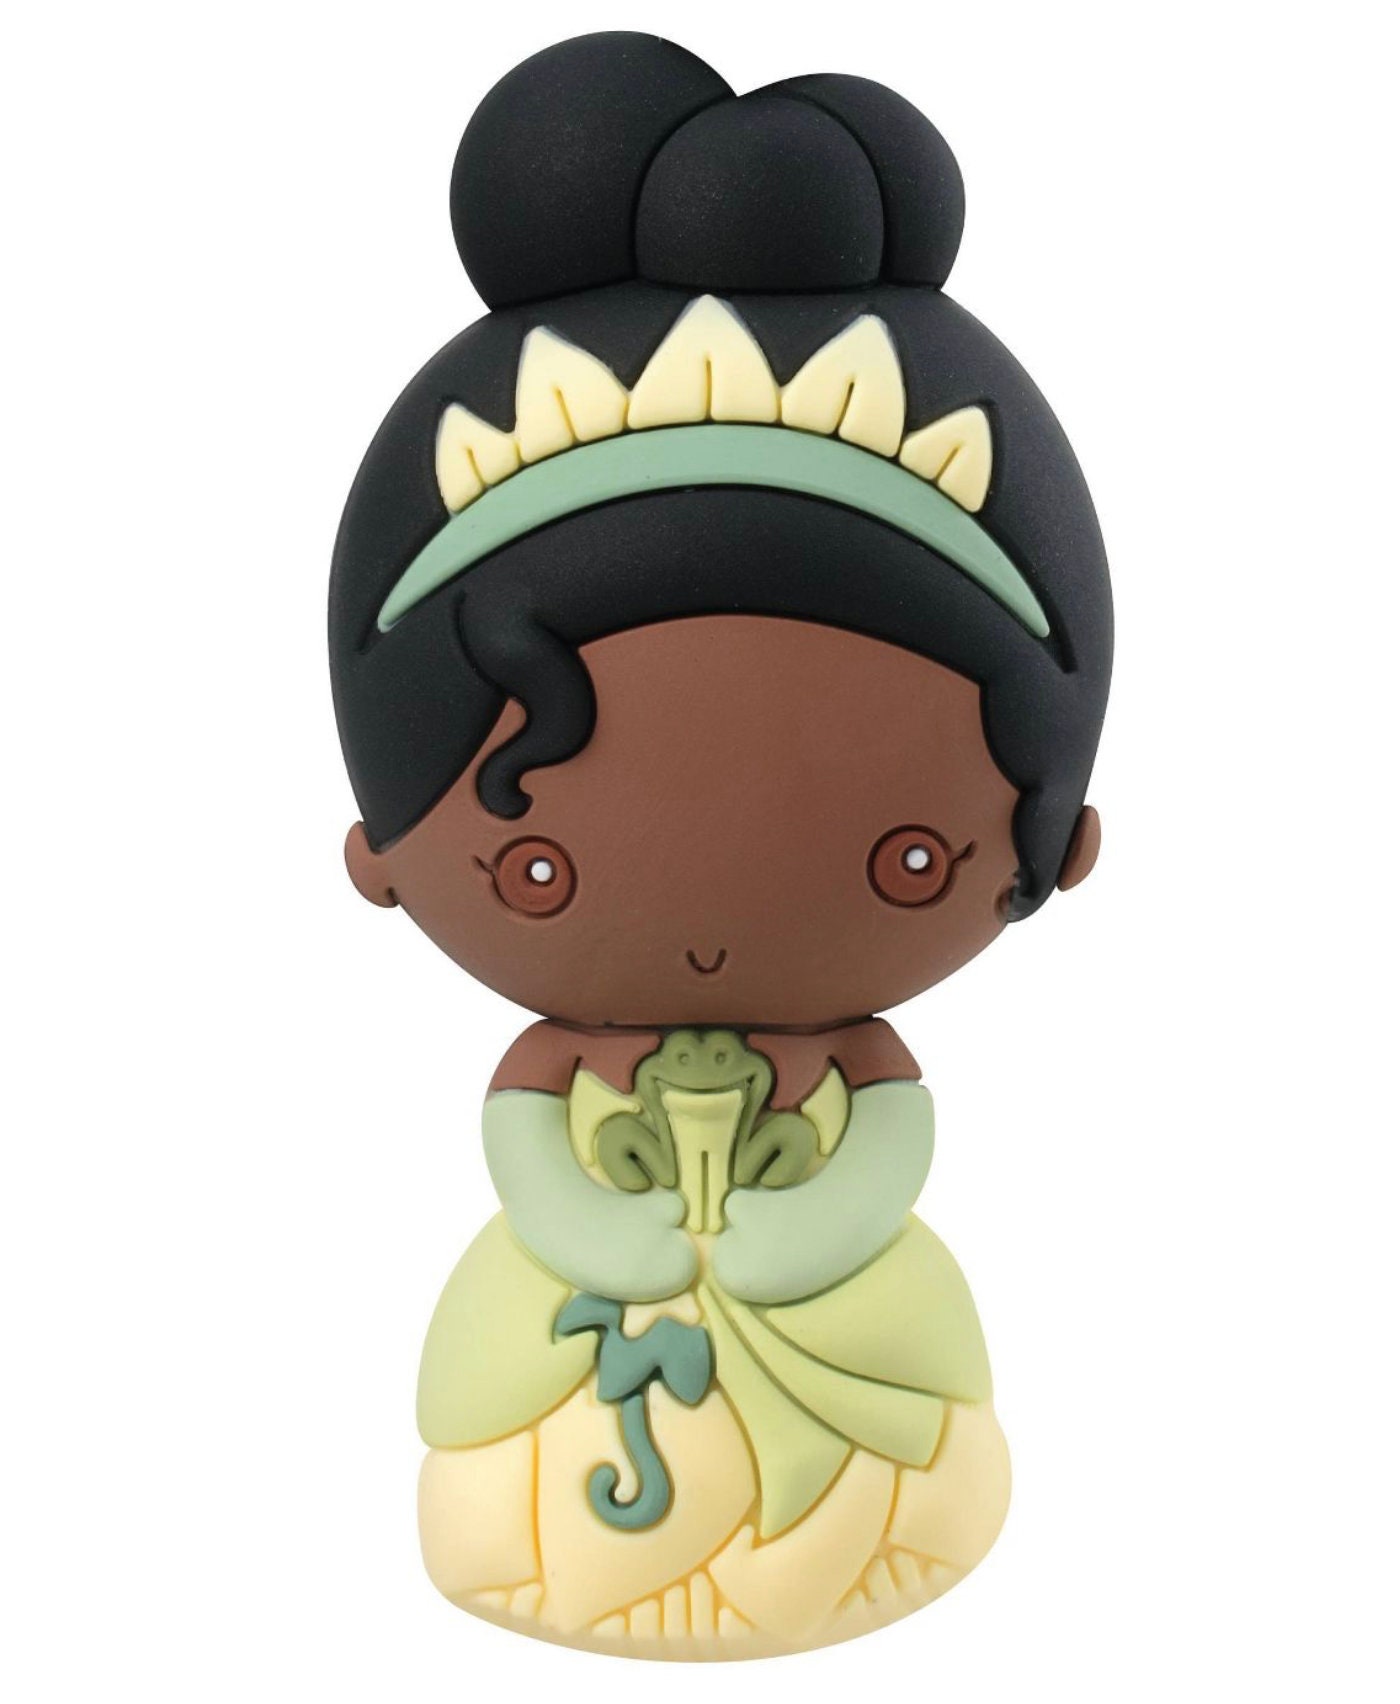 Disney Princess Surprise Figural Bag Clip 